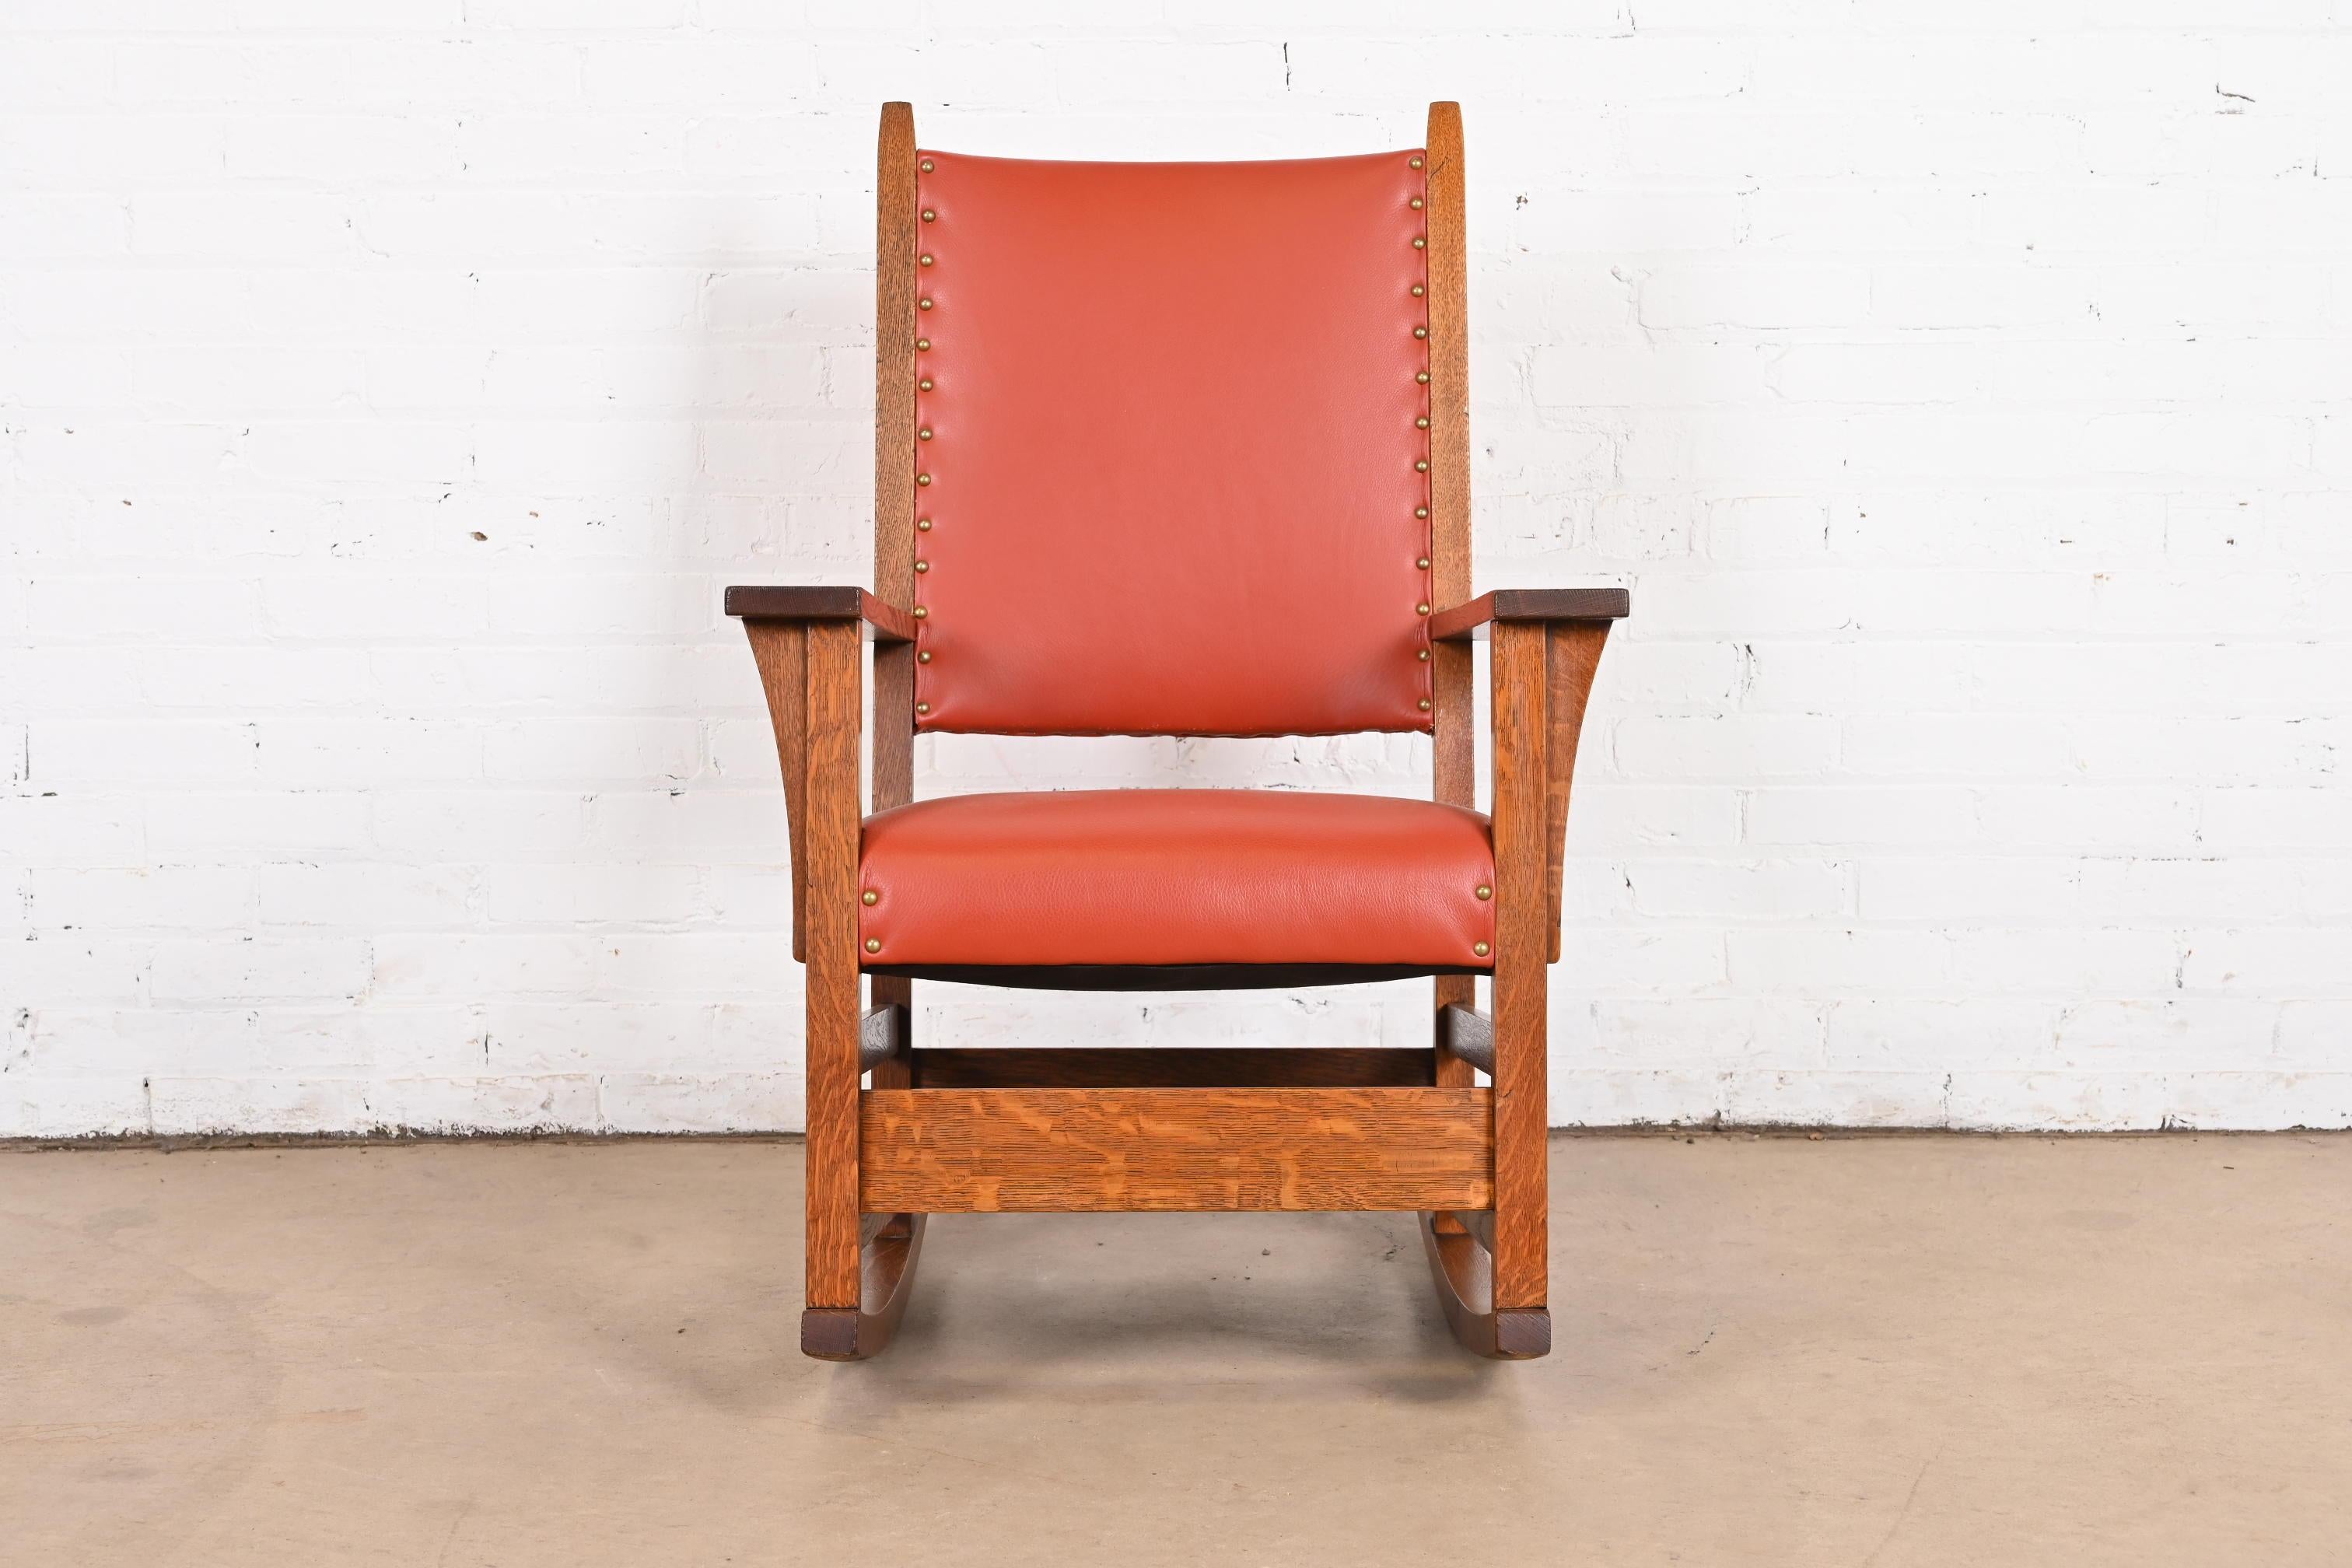 Un magnifique fauteuil à bascule Arts & Crafts en chêne Mission

Par Gustav Stickley

USA, Circa 1900

Chêne massif scié sur quartier, avec assise et dossier en cuir clouté de laiton.

Dimensions : 25,5 